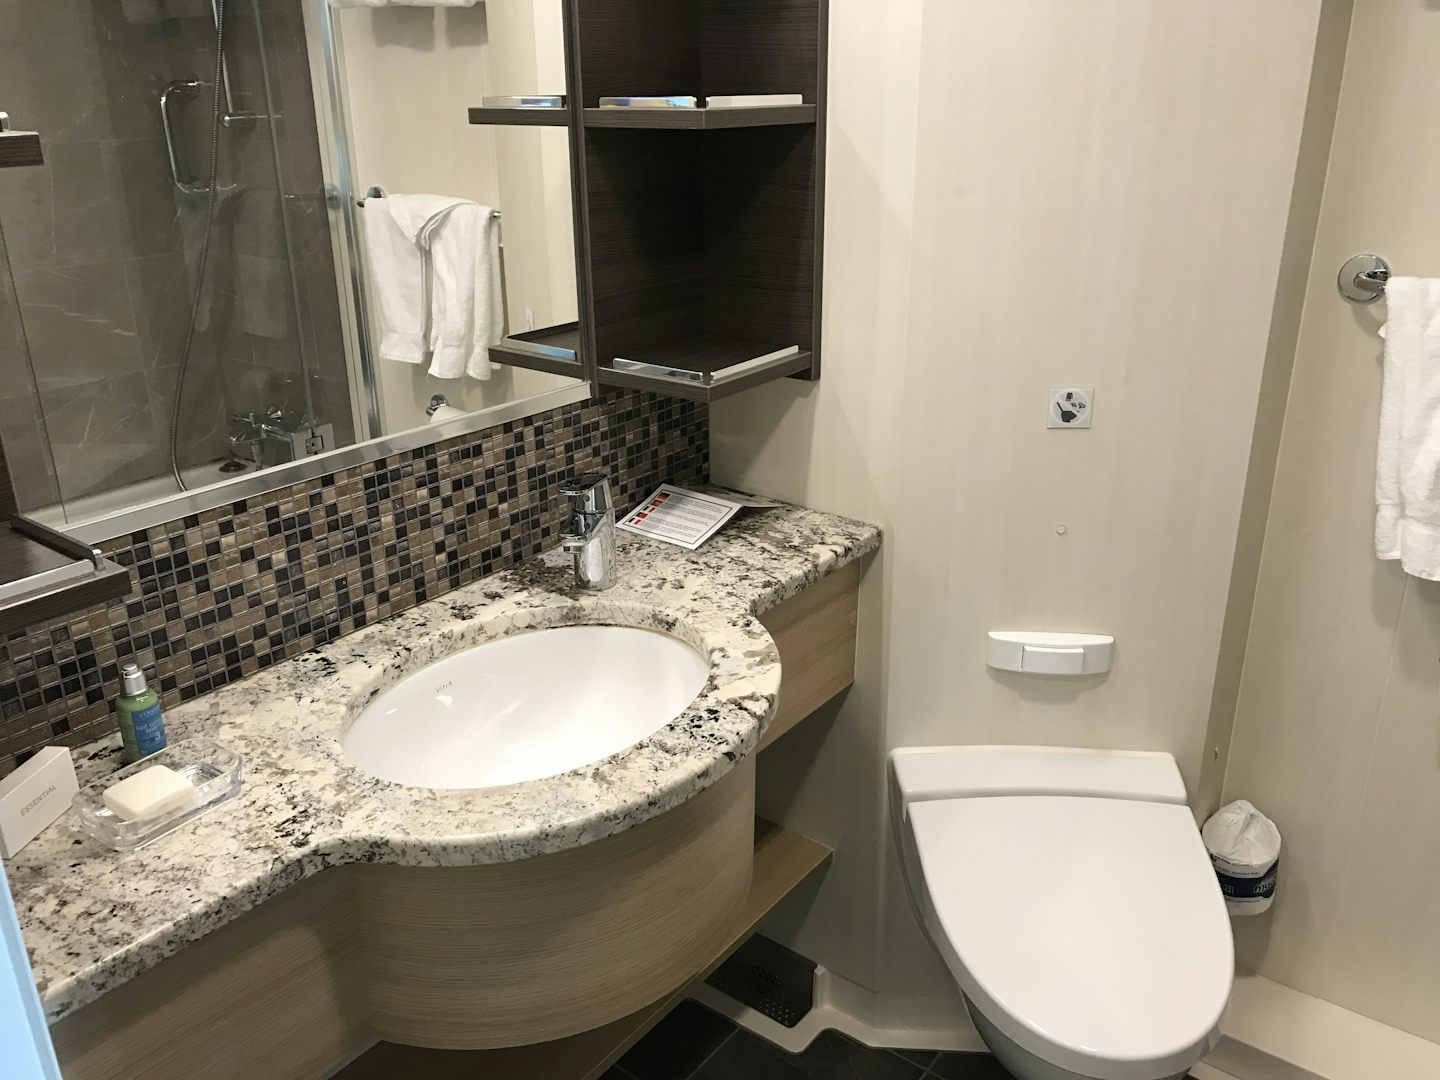 Junior Suite Bathroom